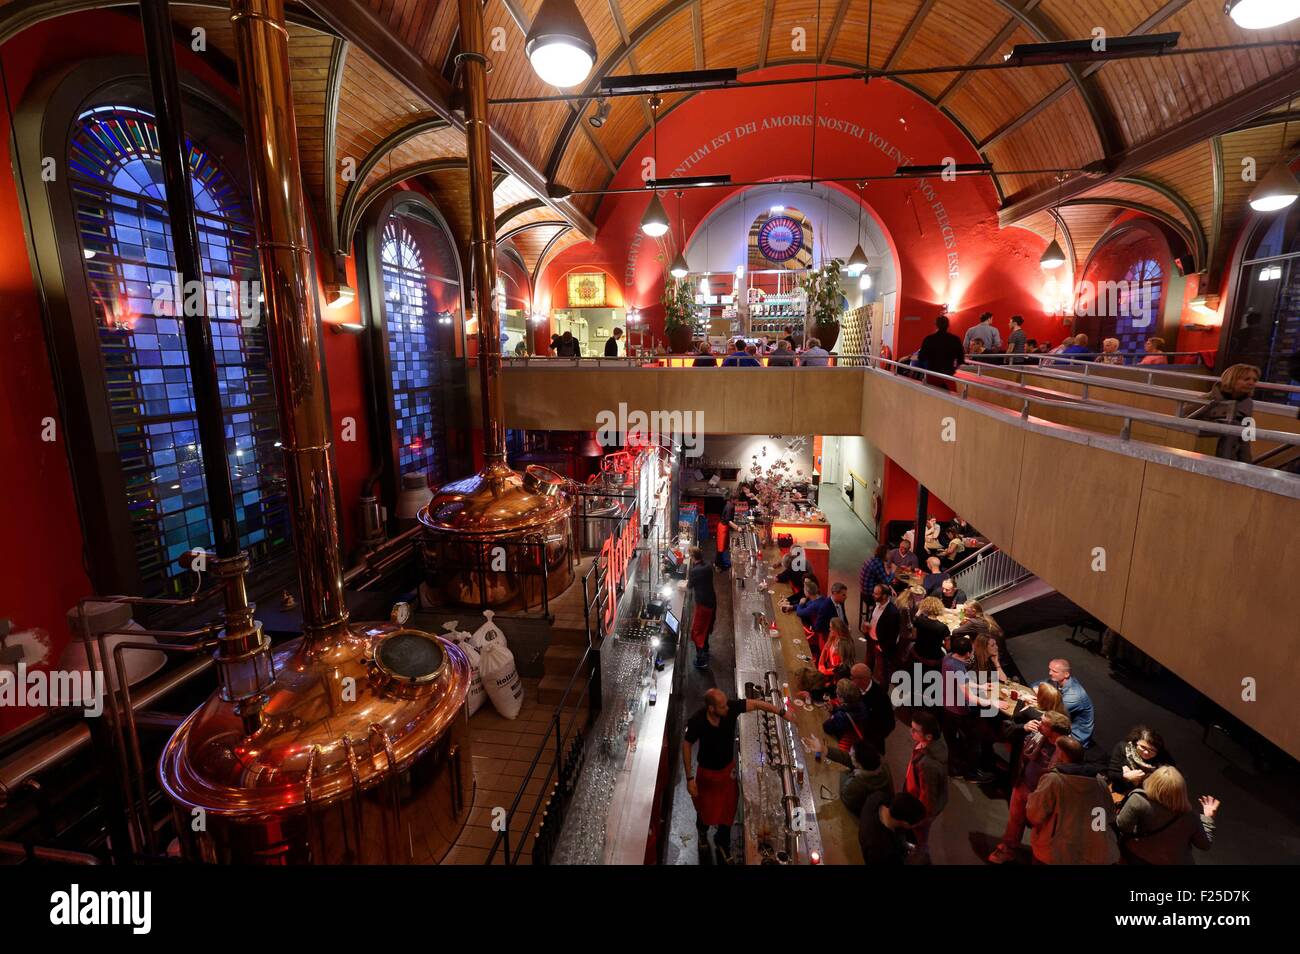 Pays-bas, le nord de la Hollande, Haarlem, Jopenkerk bar restaurant, église transformée en une brasserie Banque D'Images